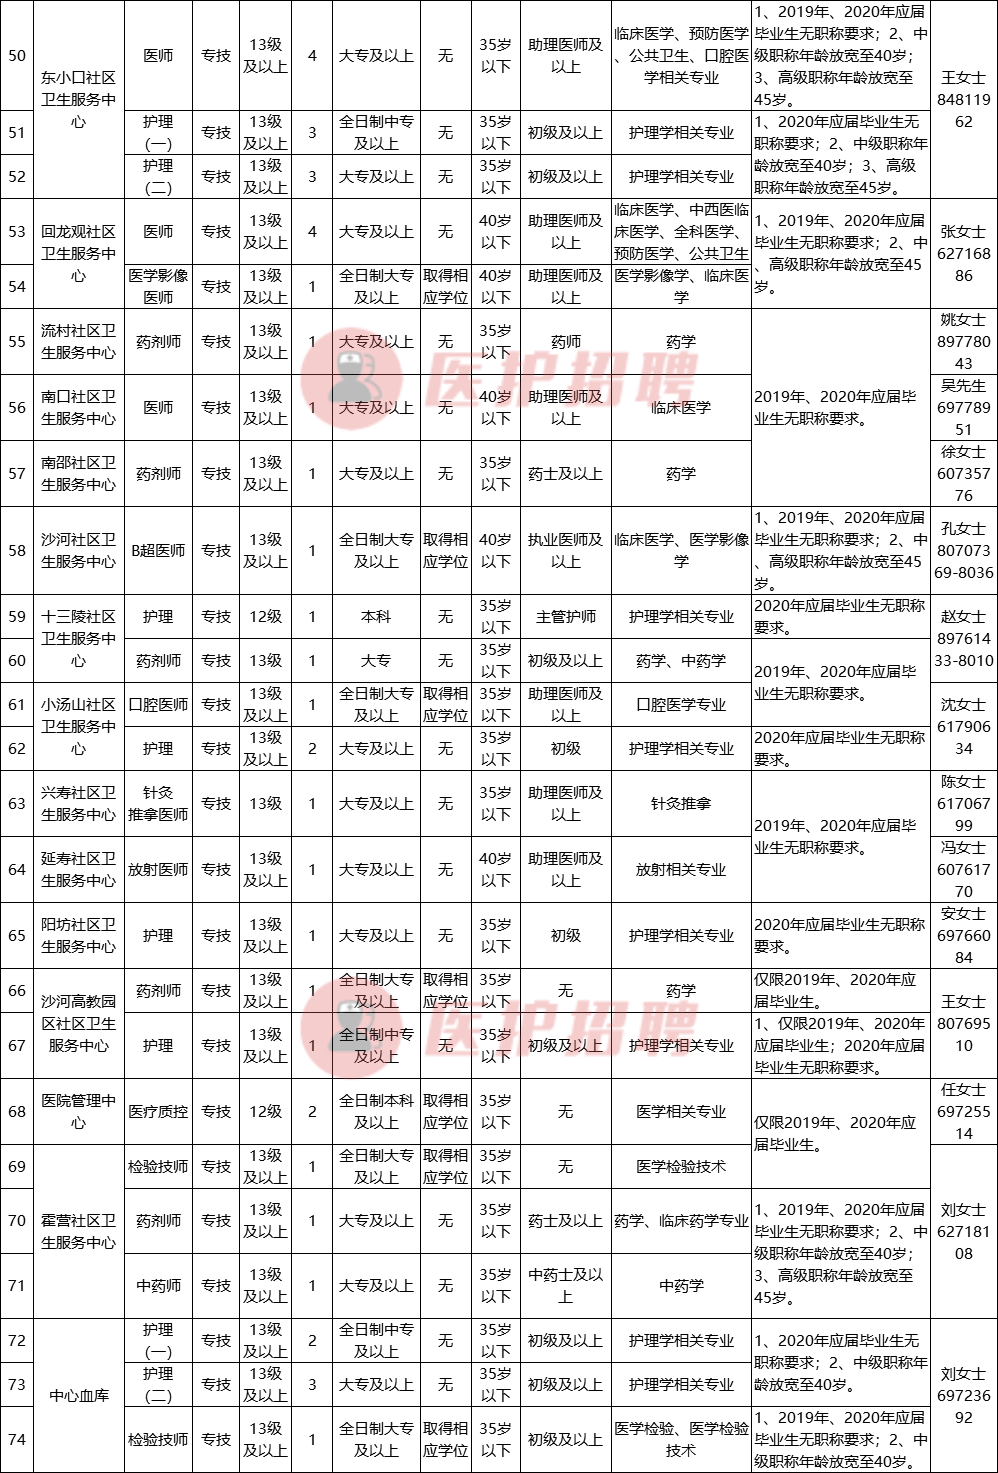 北京昌平区卫健委所属事业单位，招聘医师、技师、护理等152人